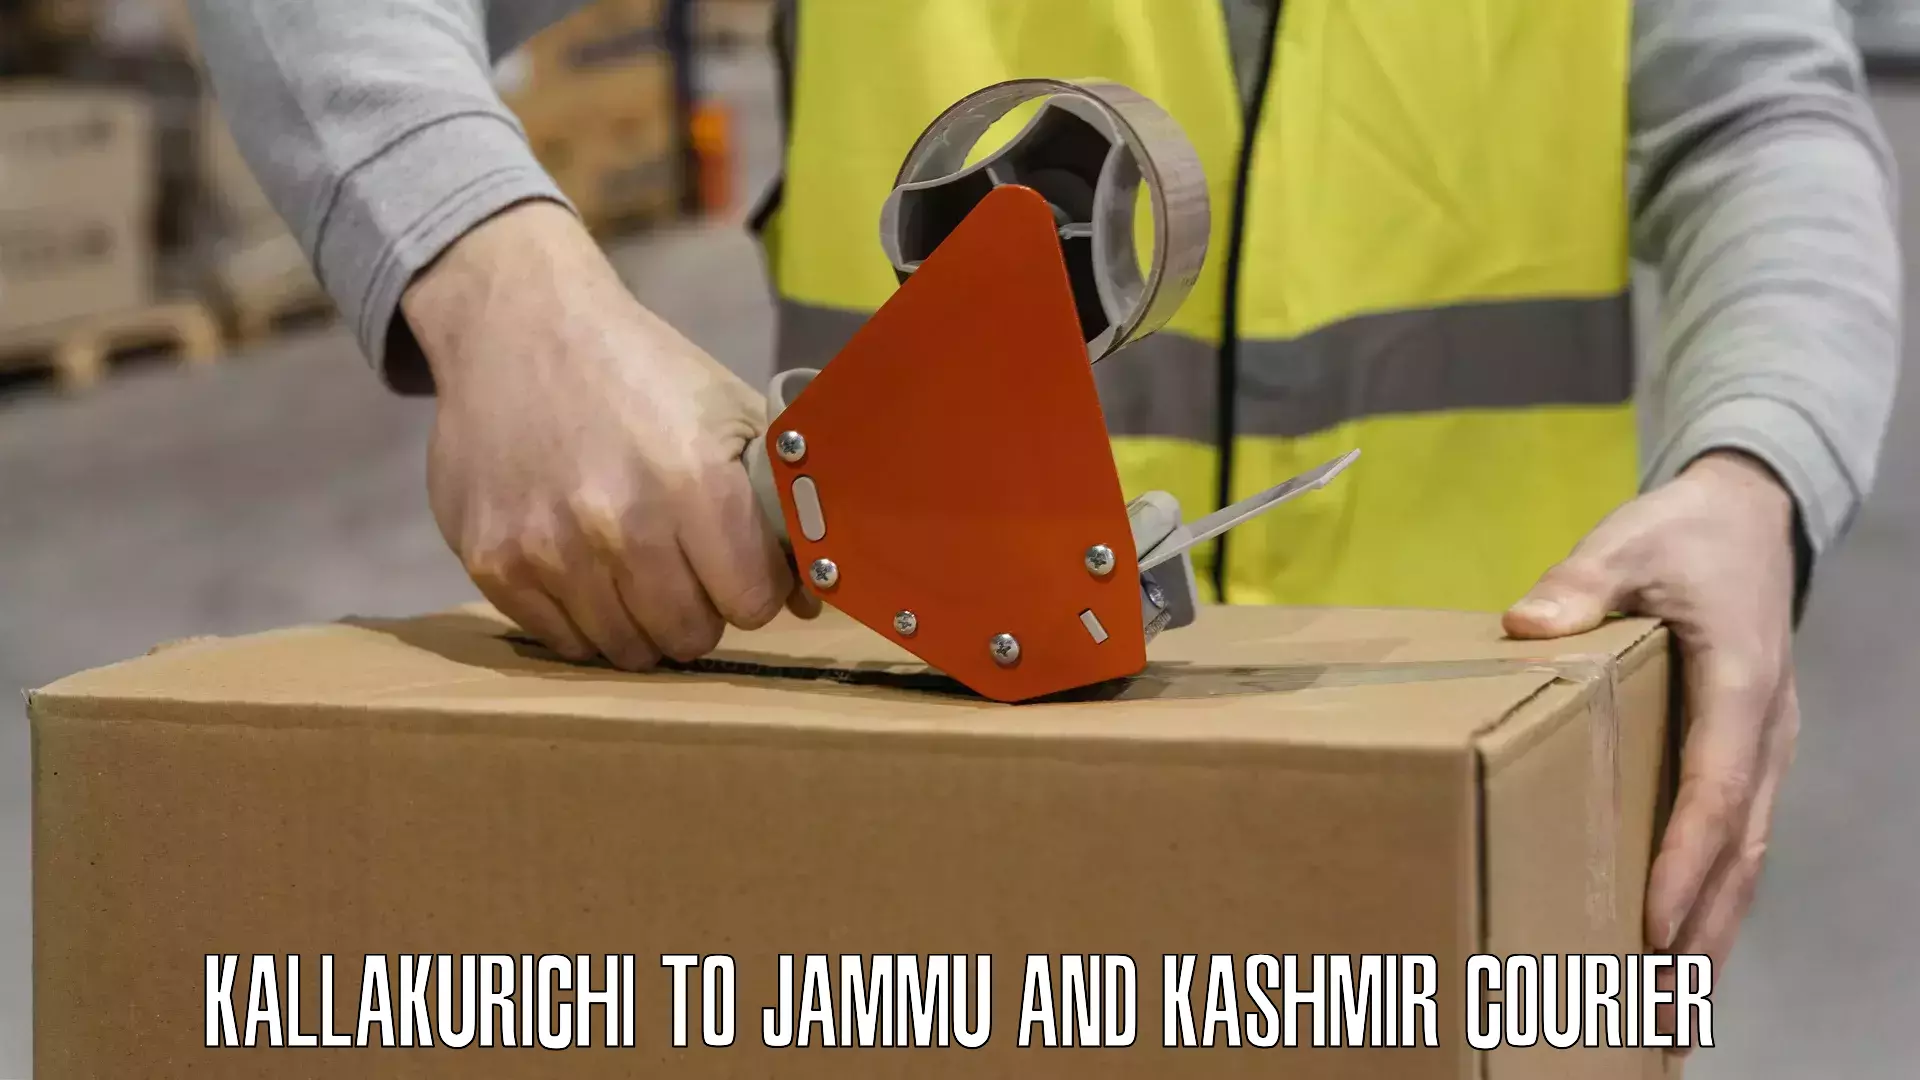 Large package courier Kallakurichi to Srinagar Kashmir